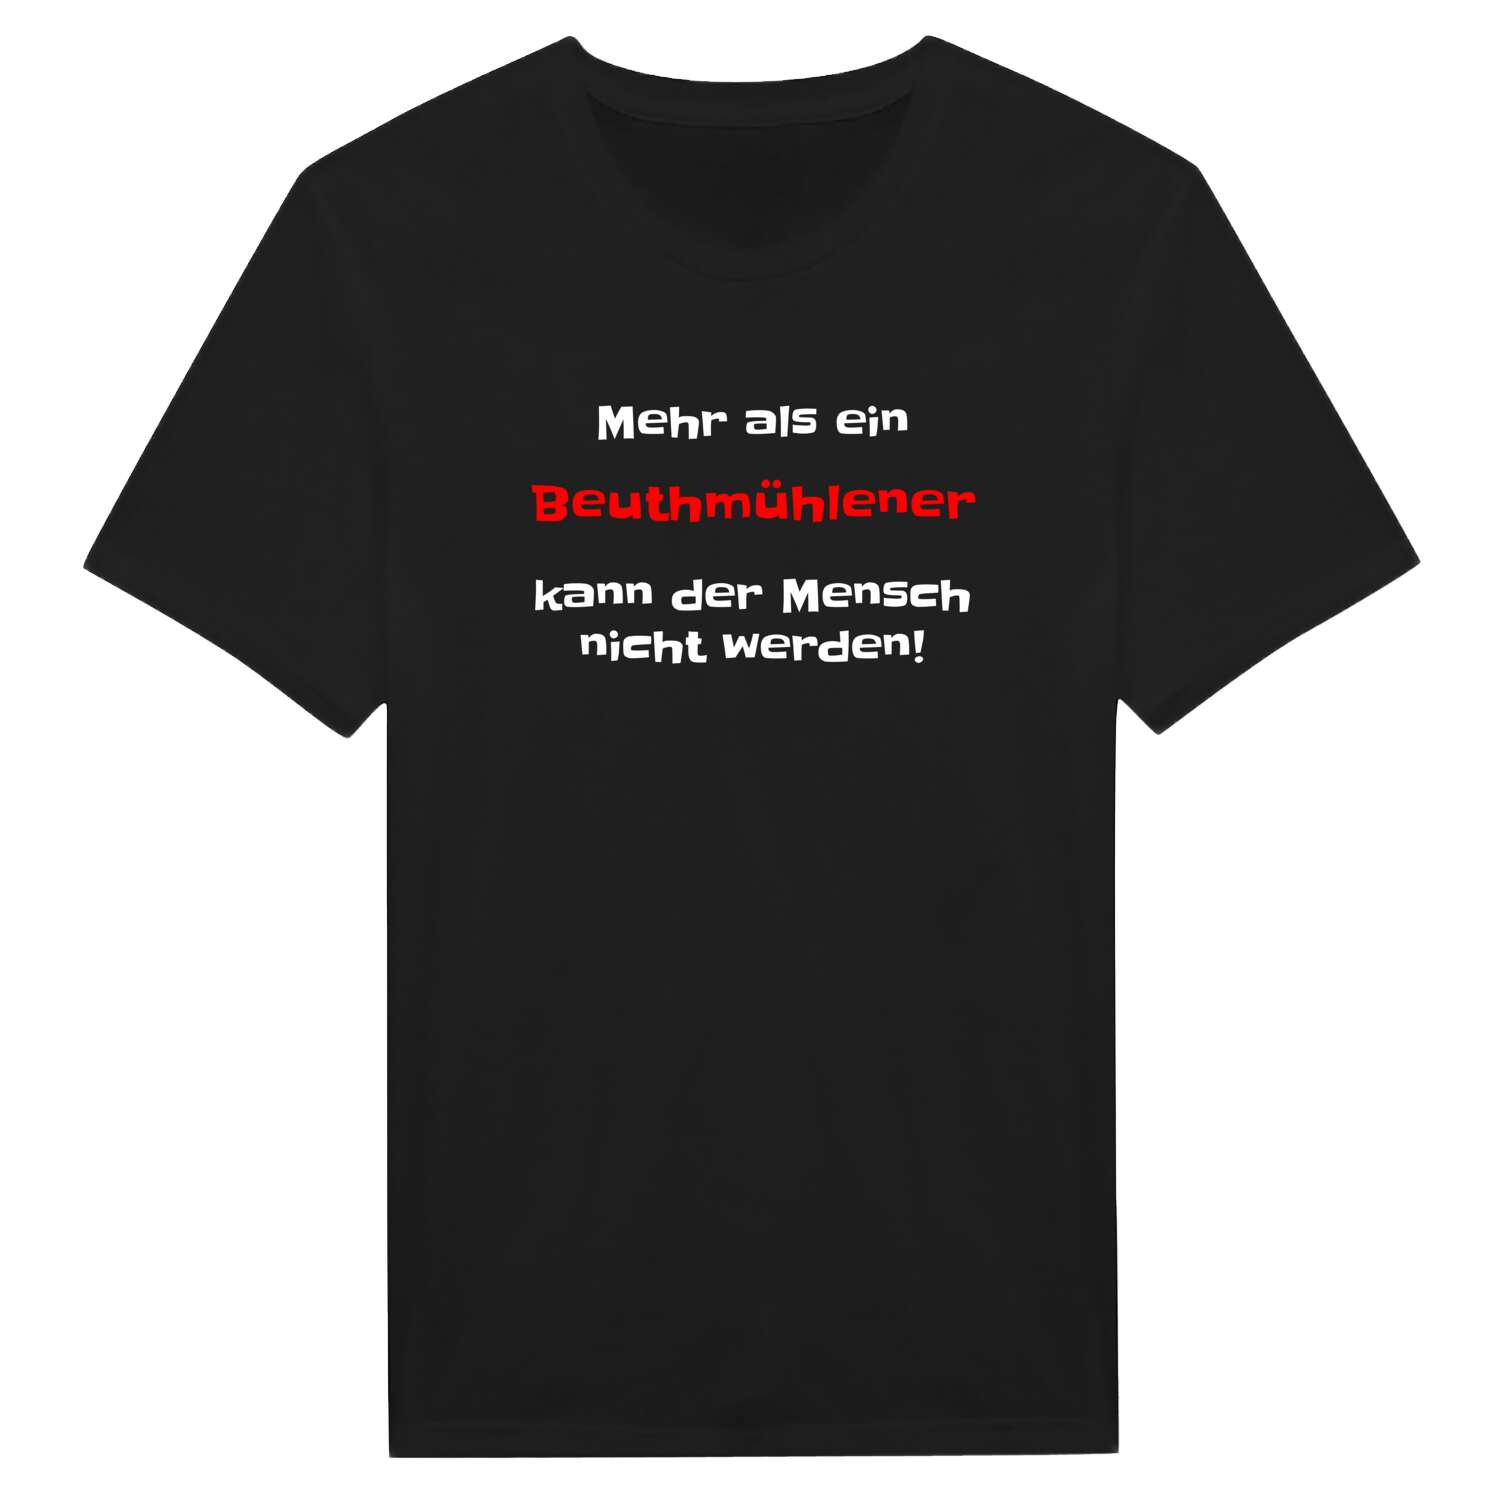 Beuthmühle T-Shirt »Mehr als ein«